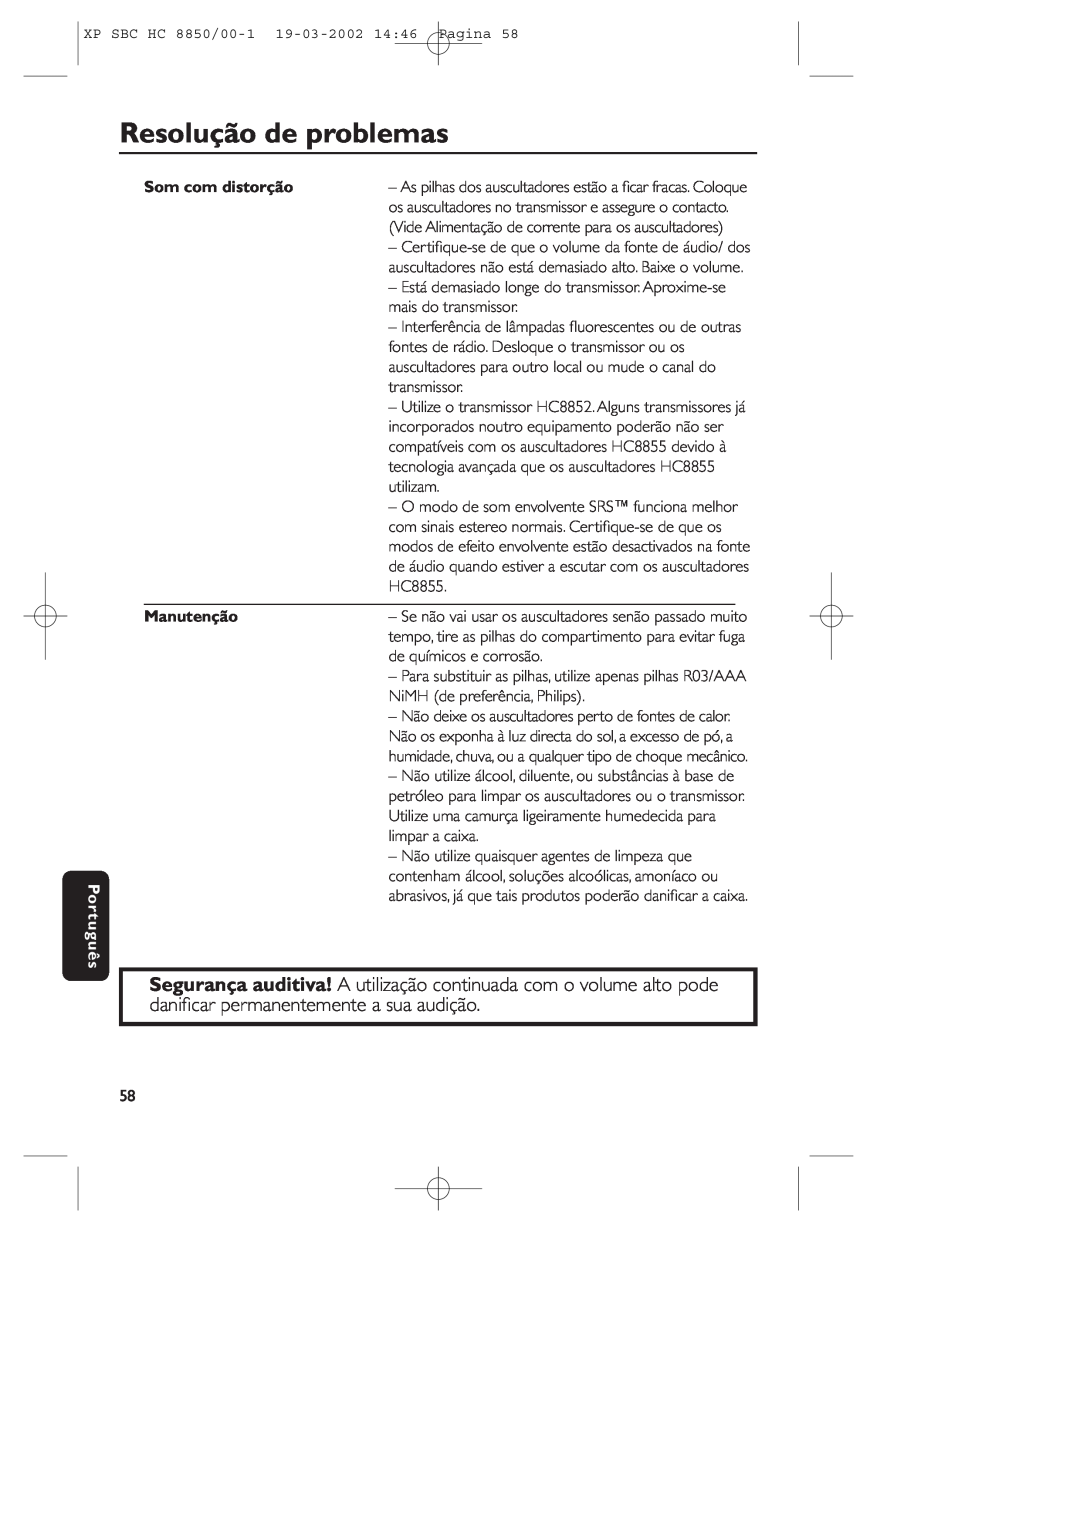 Philips HC8850 manual Resolução de problemas, Português, Som com distorção, Manutenção 